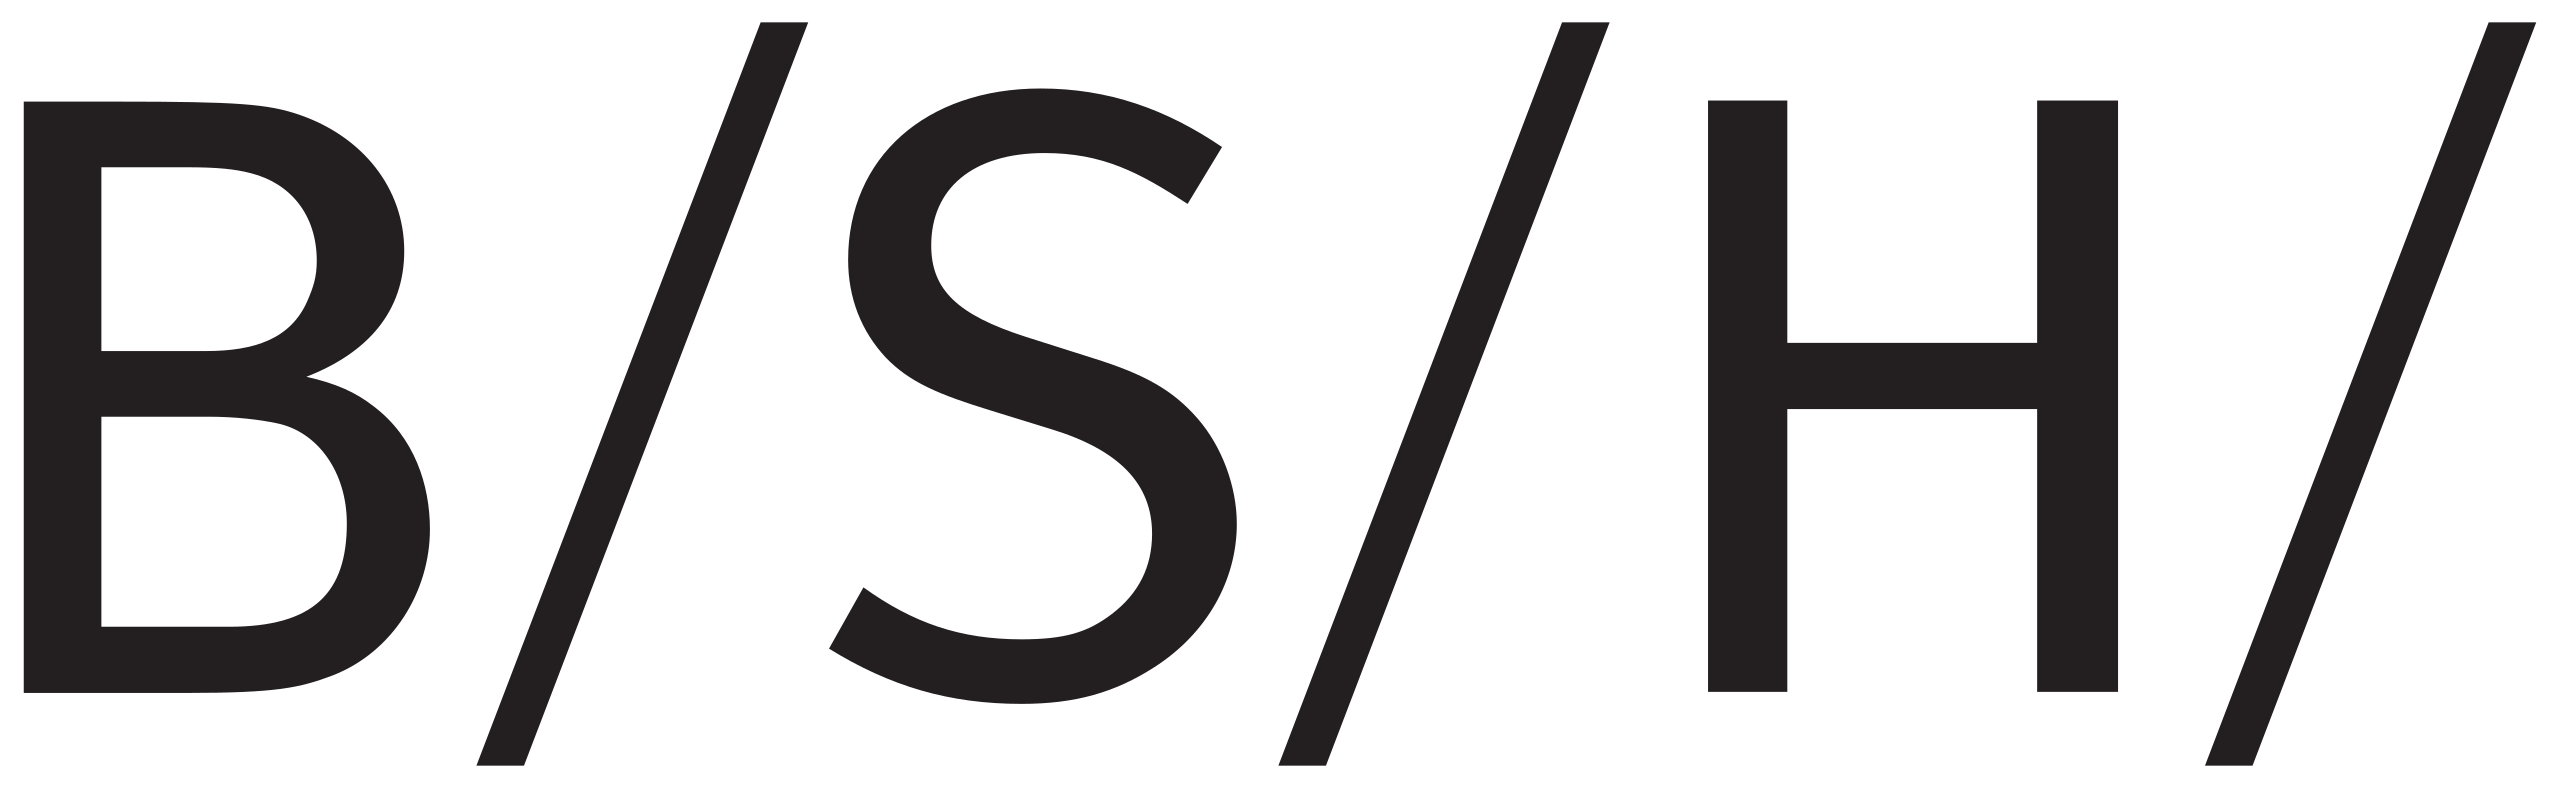 BSH Bosch und Siemens Hausgerate logo.svg